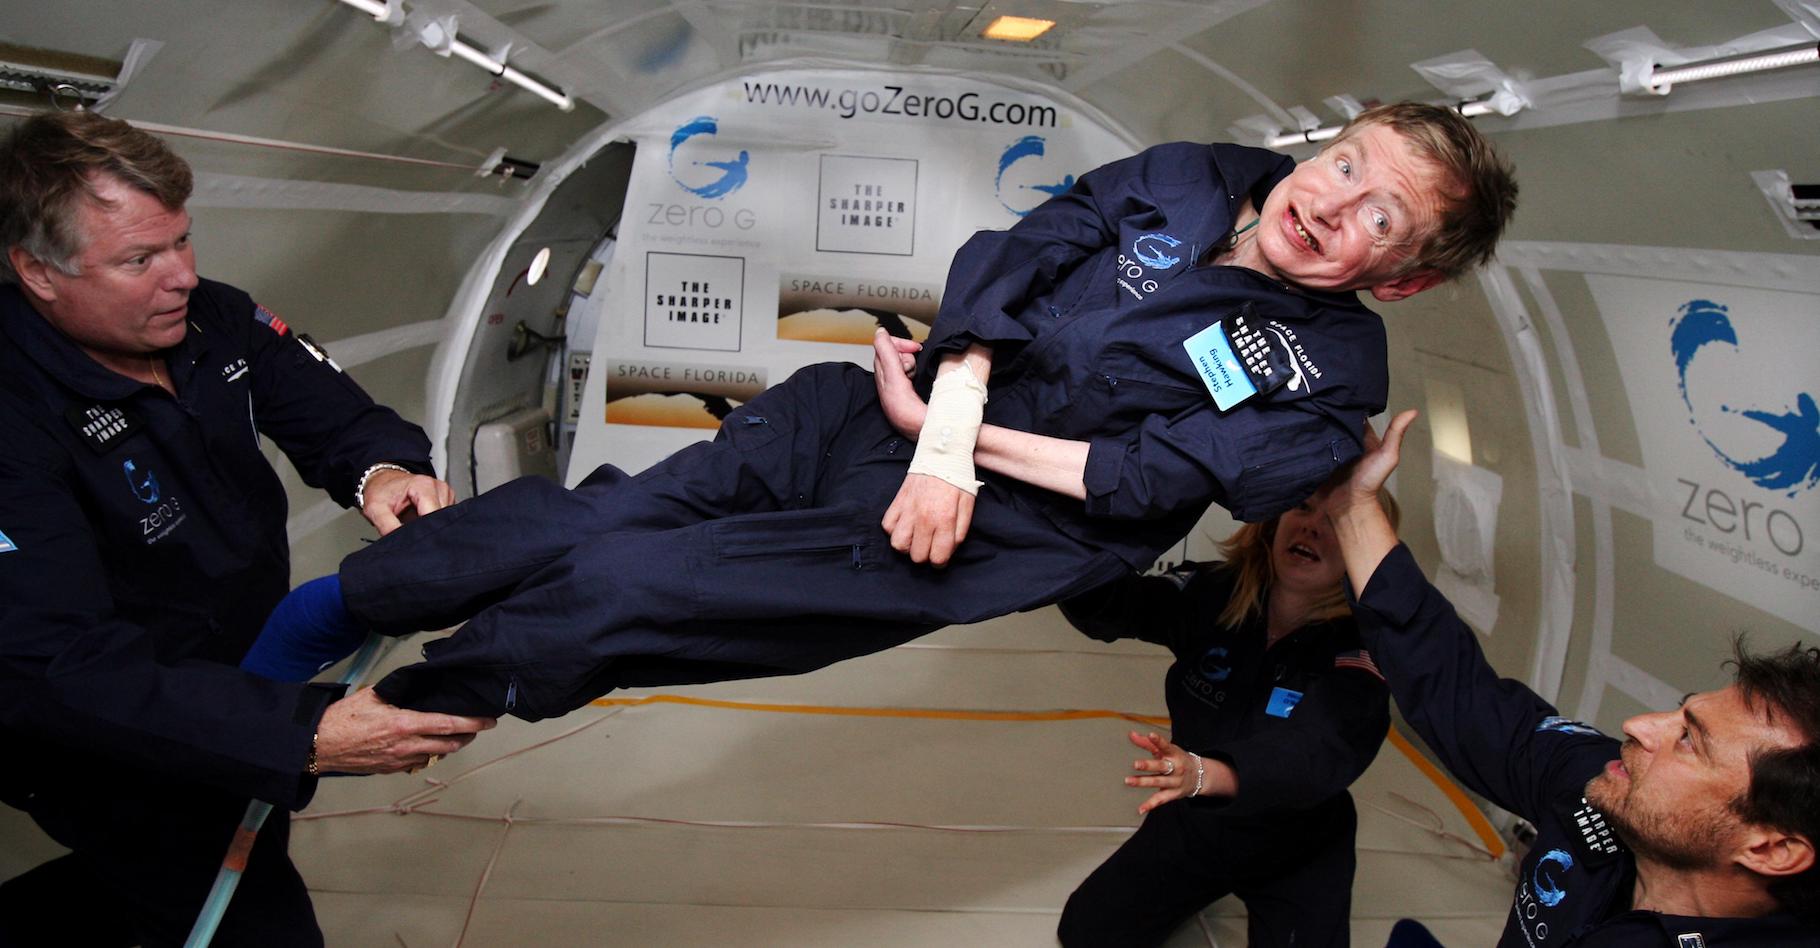 L’initiative de Stephen Hawking — ici pendant un vol dans un avion « zéro G » — de rendre sa thèse accessible au public inspirera-t-elle d’autres grands scientifiques ? C’est ce qu'espère l’université de Cambridge — qui a vu passer presque 100 lauréats de prix Nobel. © Jim Campbell, Aero-New Network, Wikipedia, Domaine public